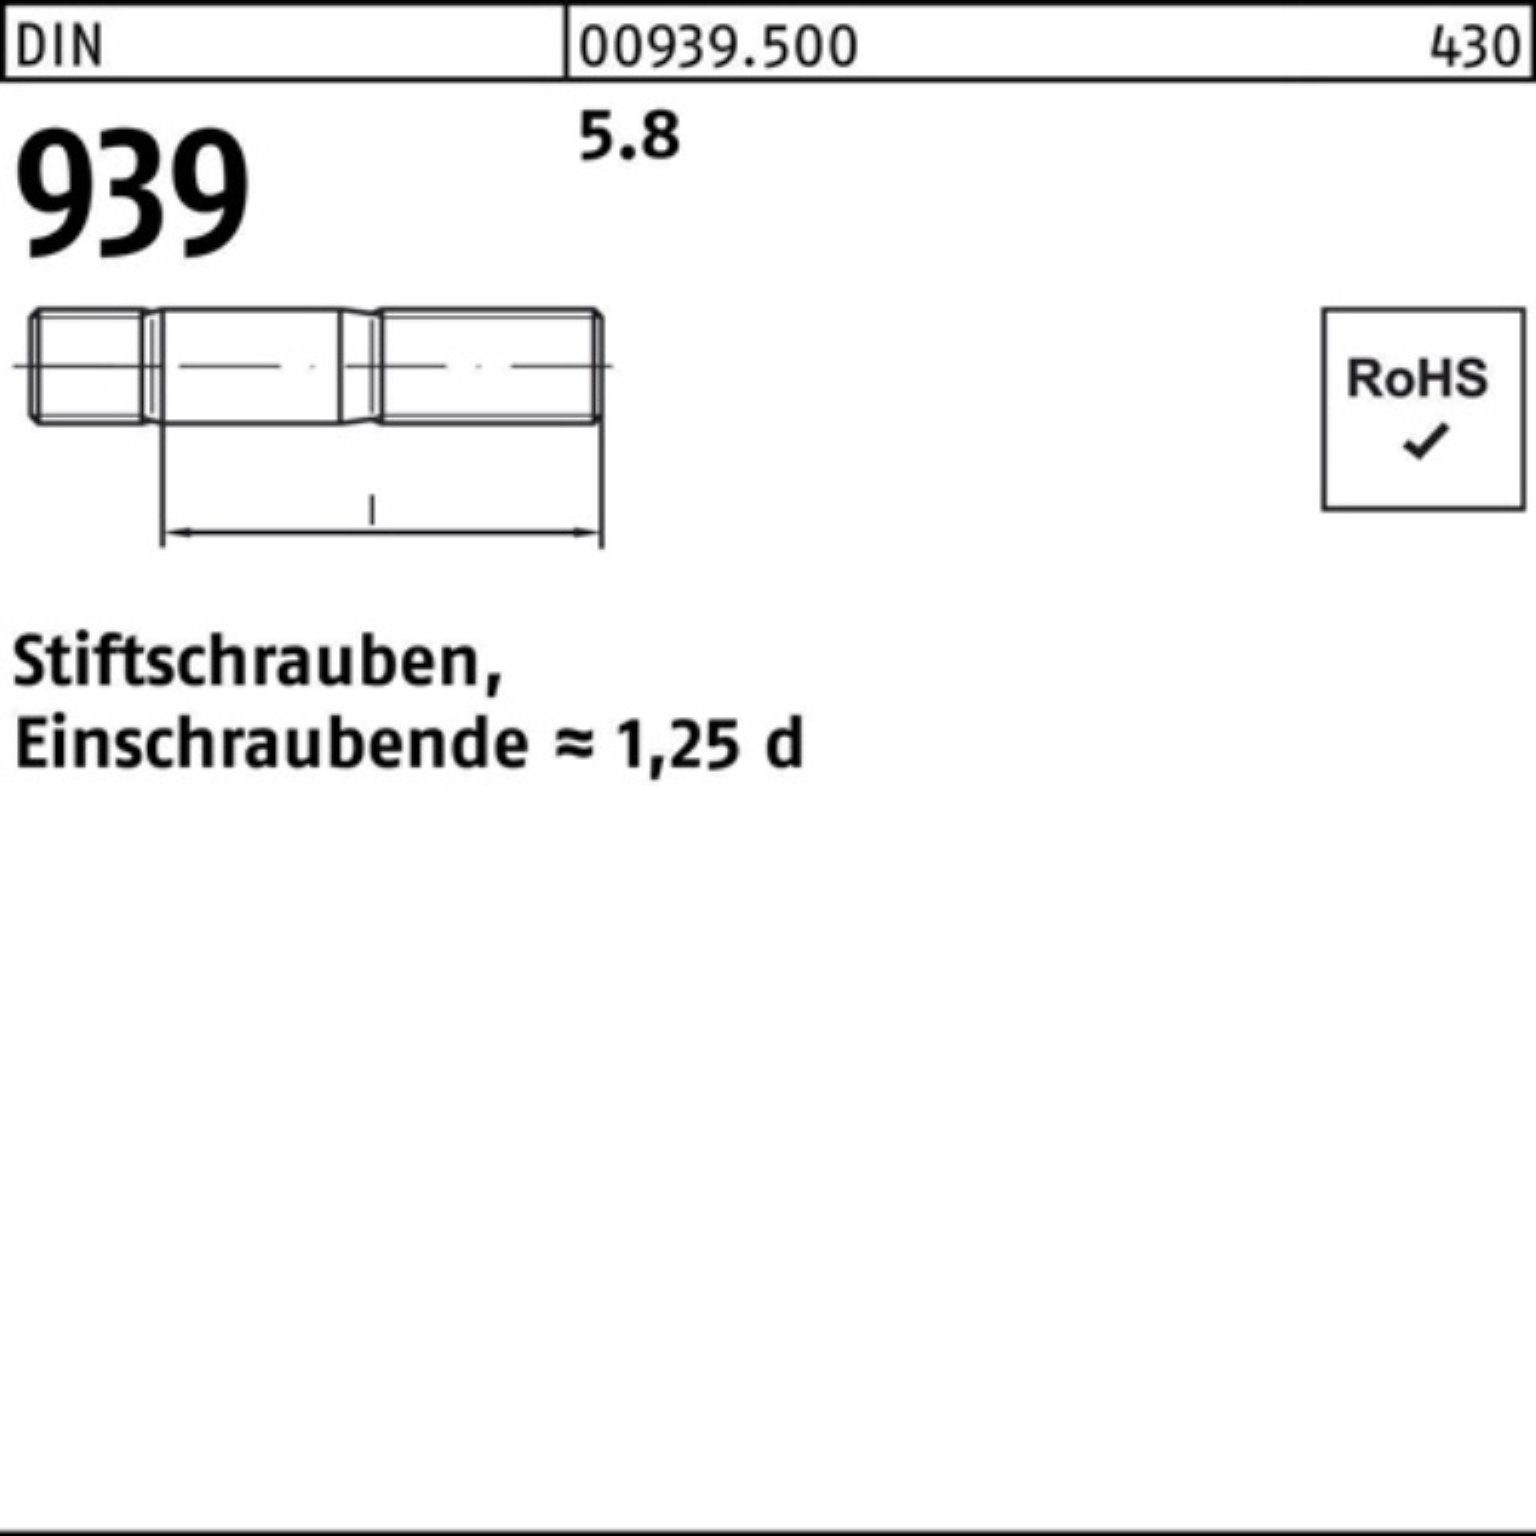 Reyher Stiftschraube 50 5.8 Stiftschraube S M16x 939 25 100er Einschraubende=1,25d DIN Pack